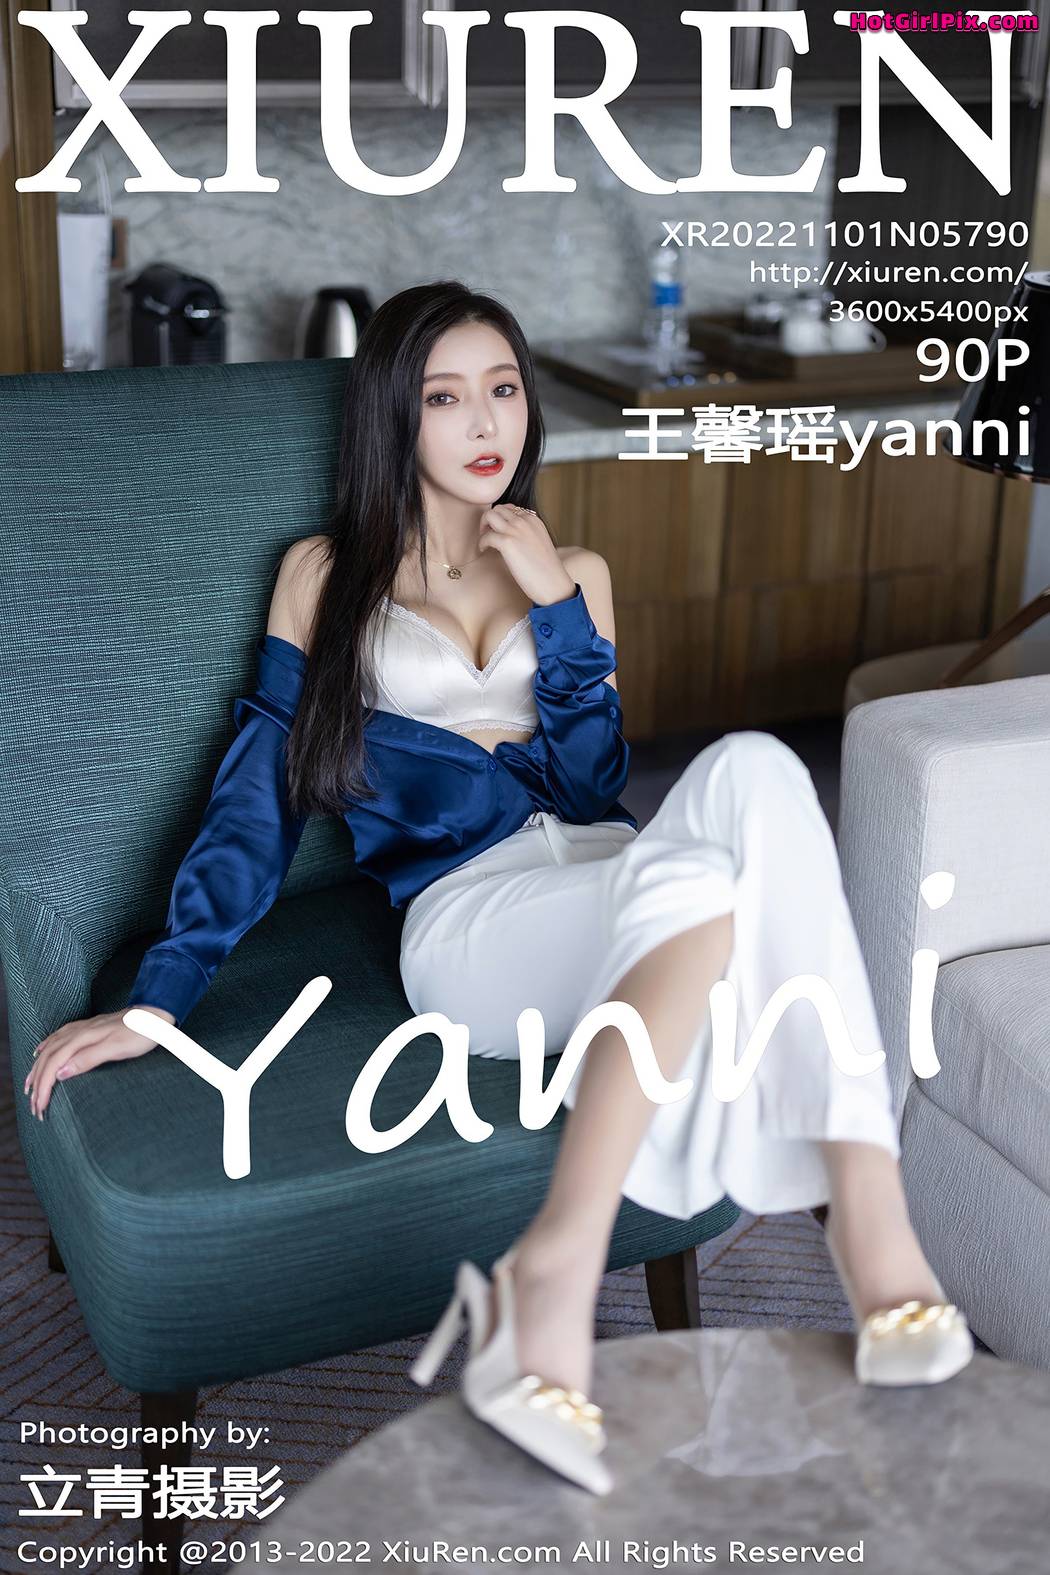 [XIUREN] No.5790 Wang Xin Yao 王馨瑶yanni